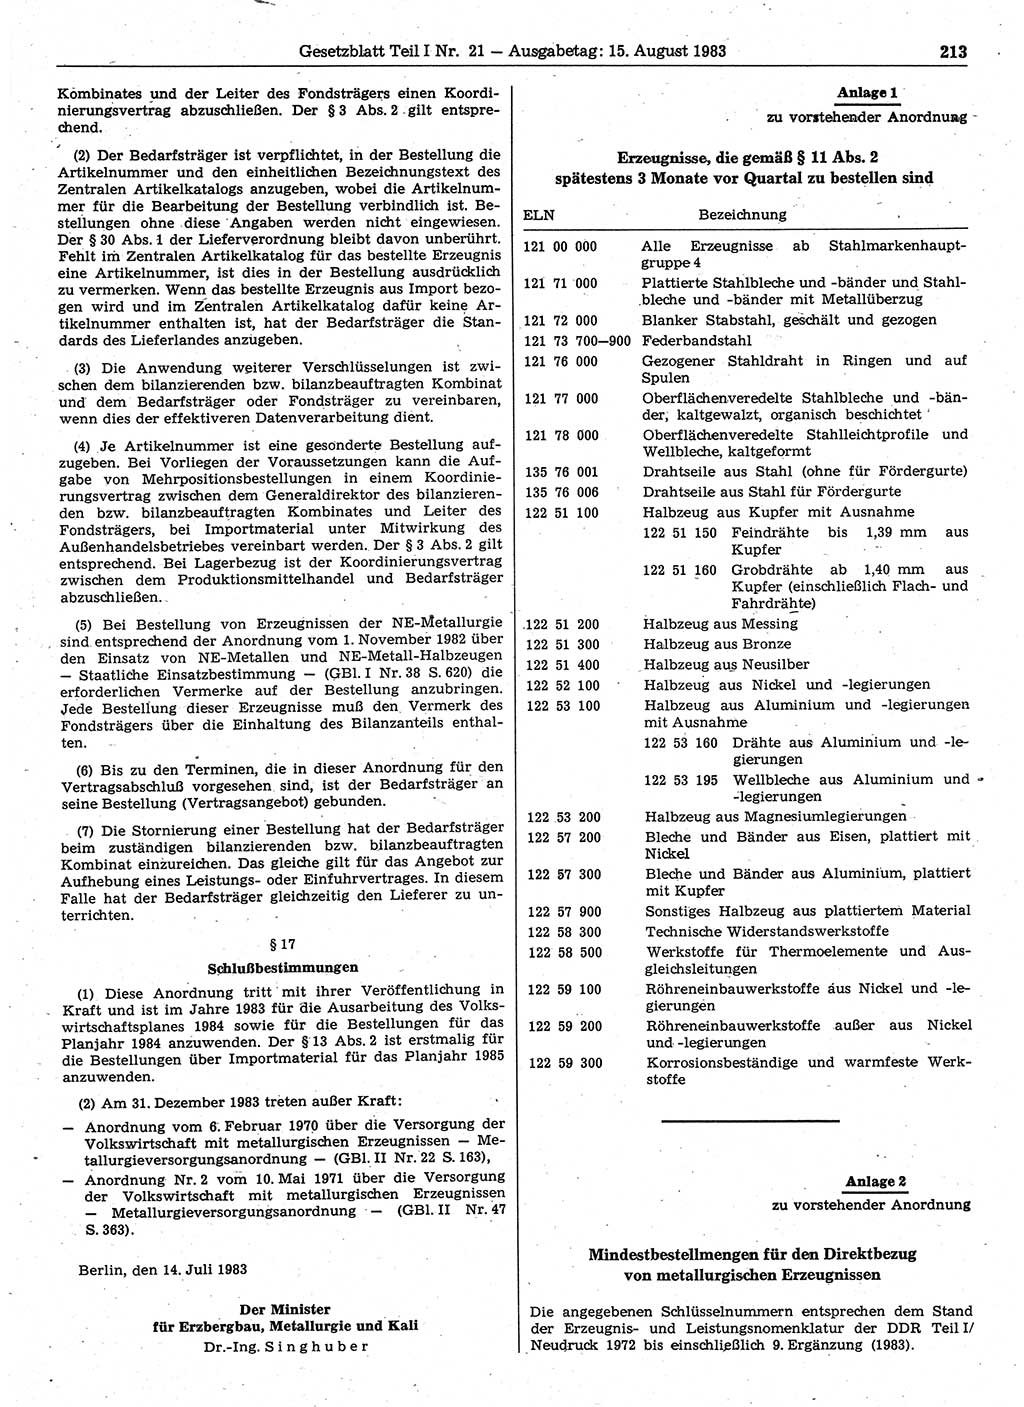 Gesetzblatt (GBl.) der Deutschen Demokratischen Republik (DDR) Teil Ⅰ 1983, Seite 213 (GBl. DDR Ⅰ 1983, S. 213)